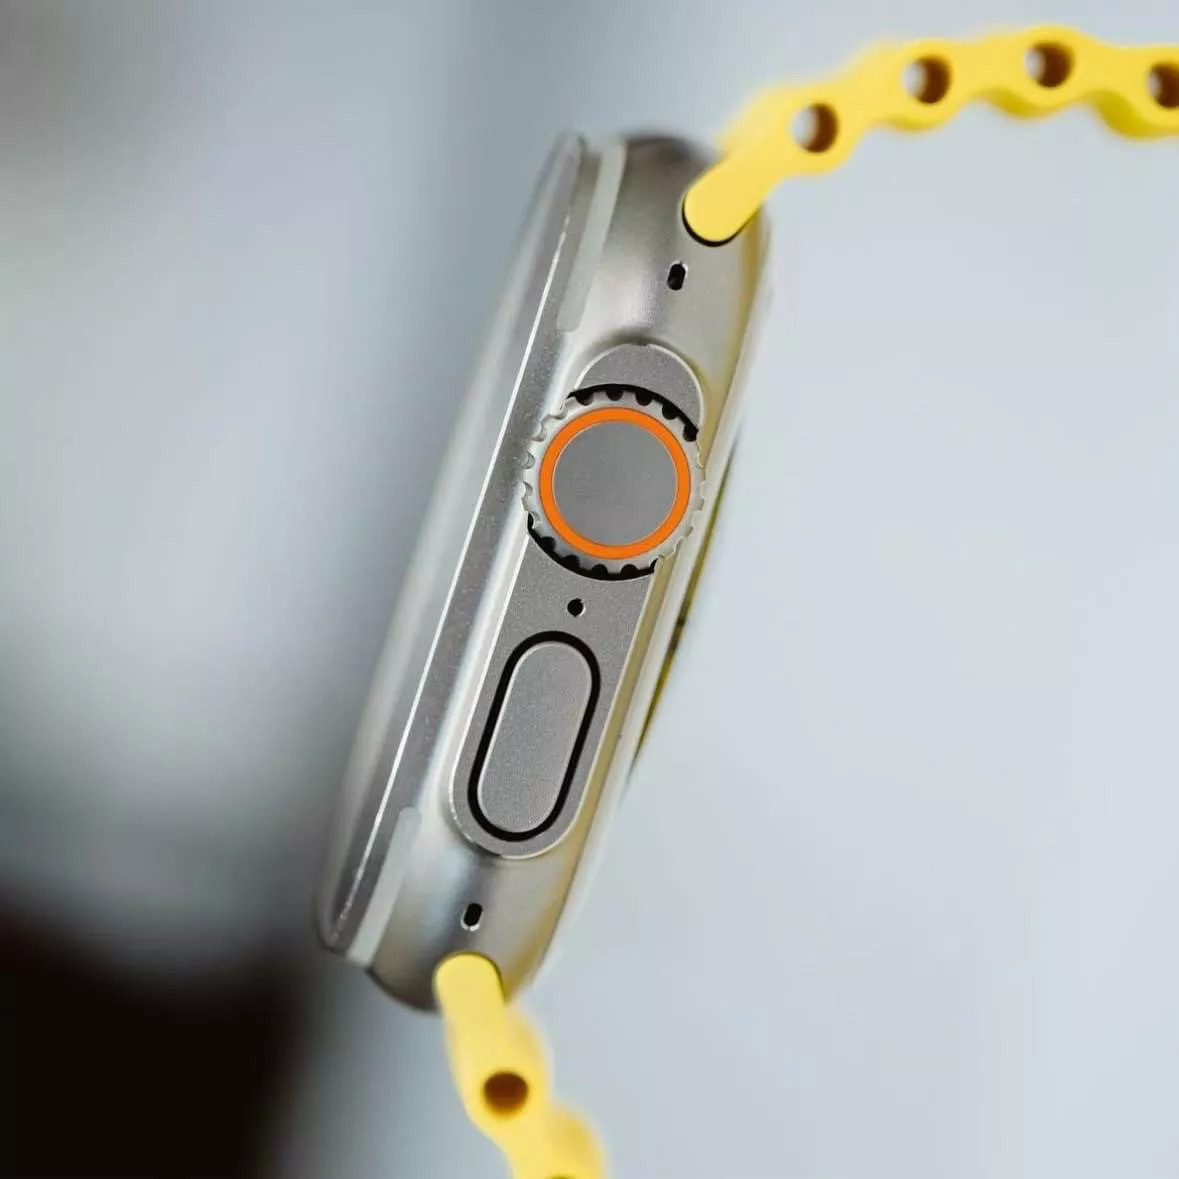 Dây đeo thay thế dành cho Apple Watch 38mm / 40mm / 41mm hiệu COTEETCI Ocean Strap Watchband